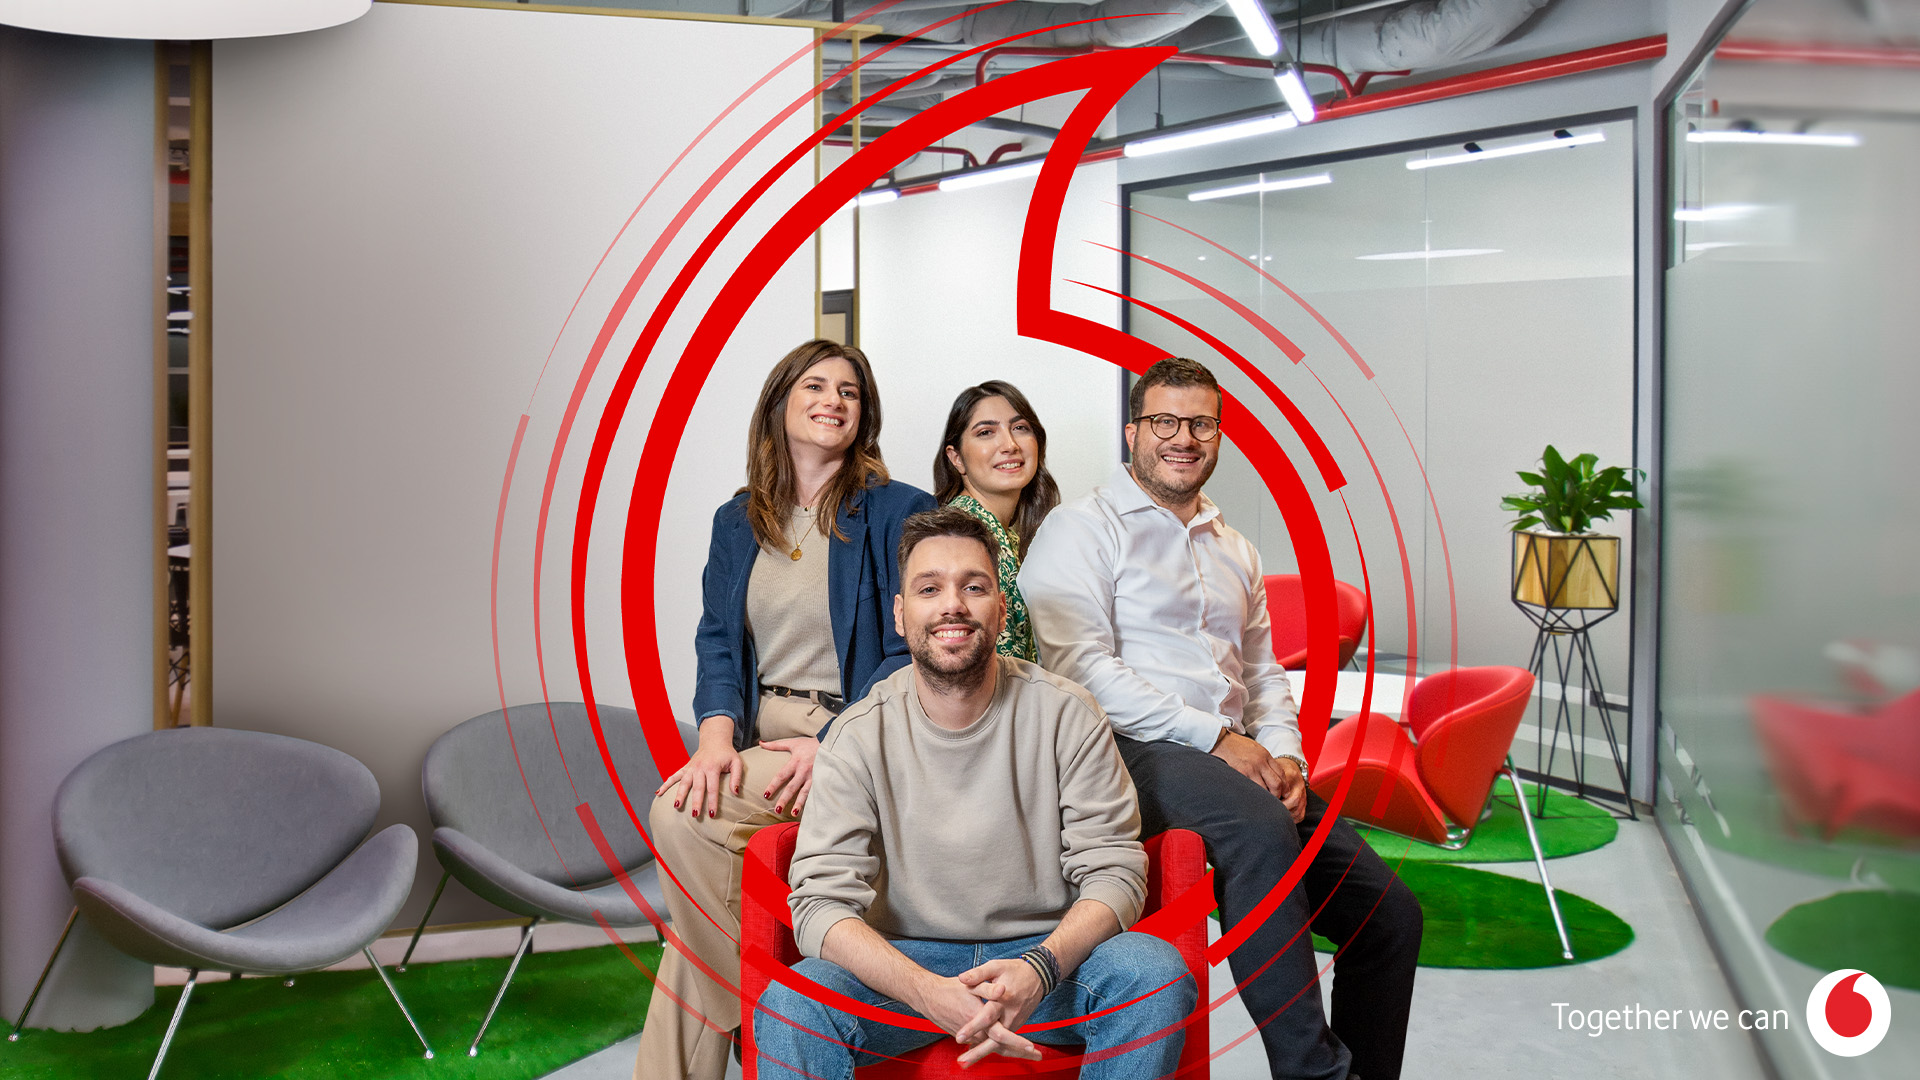 Vodafone Discover Graduate Program